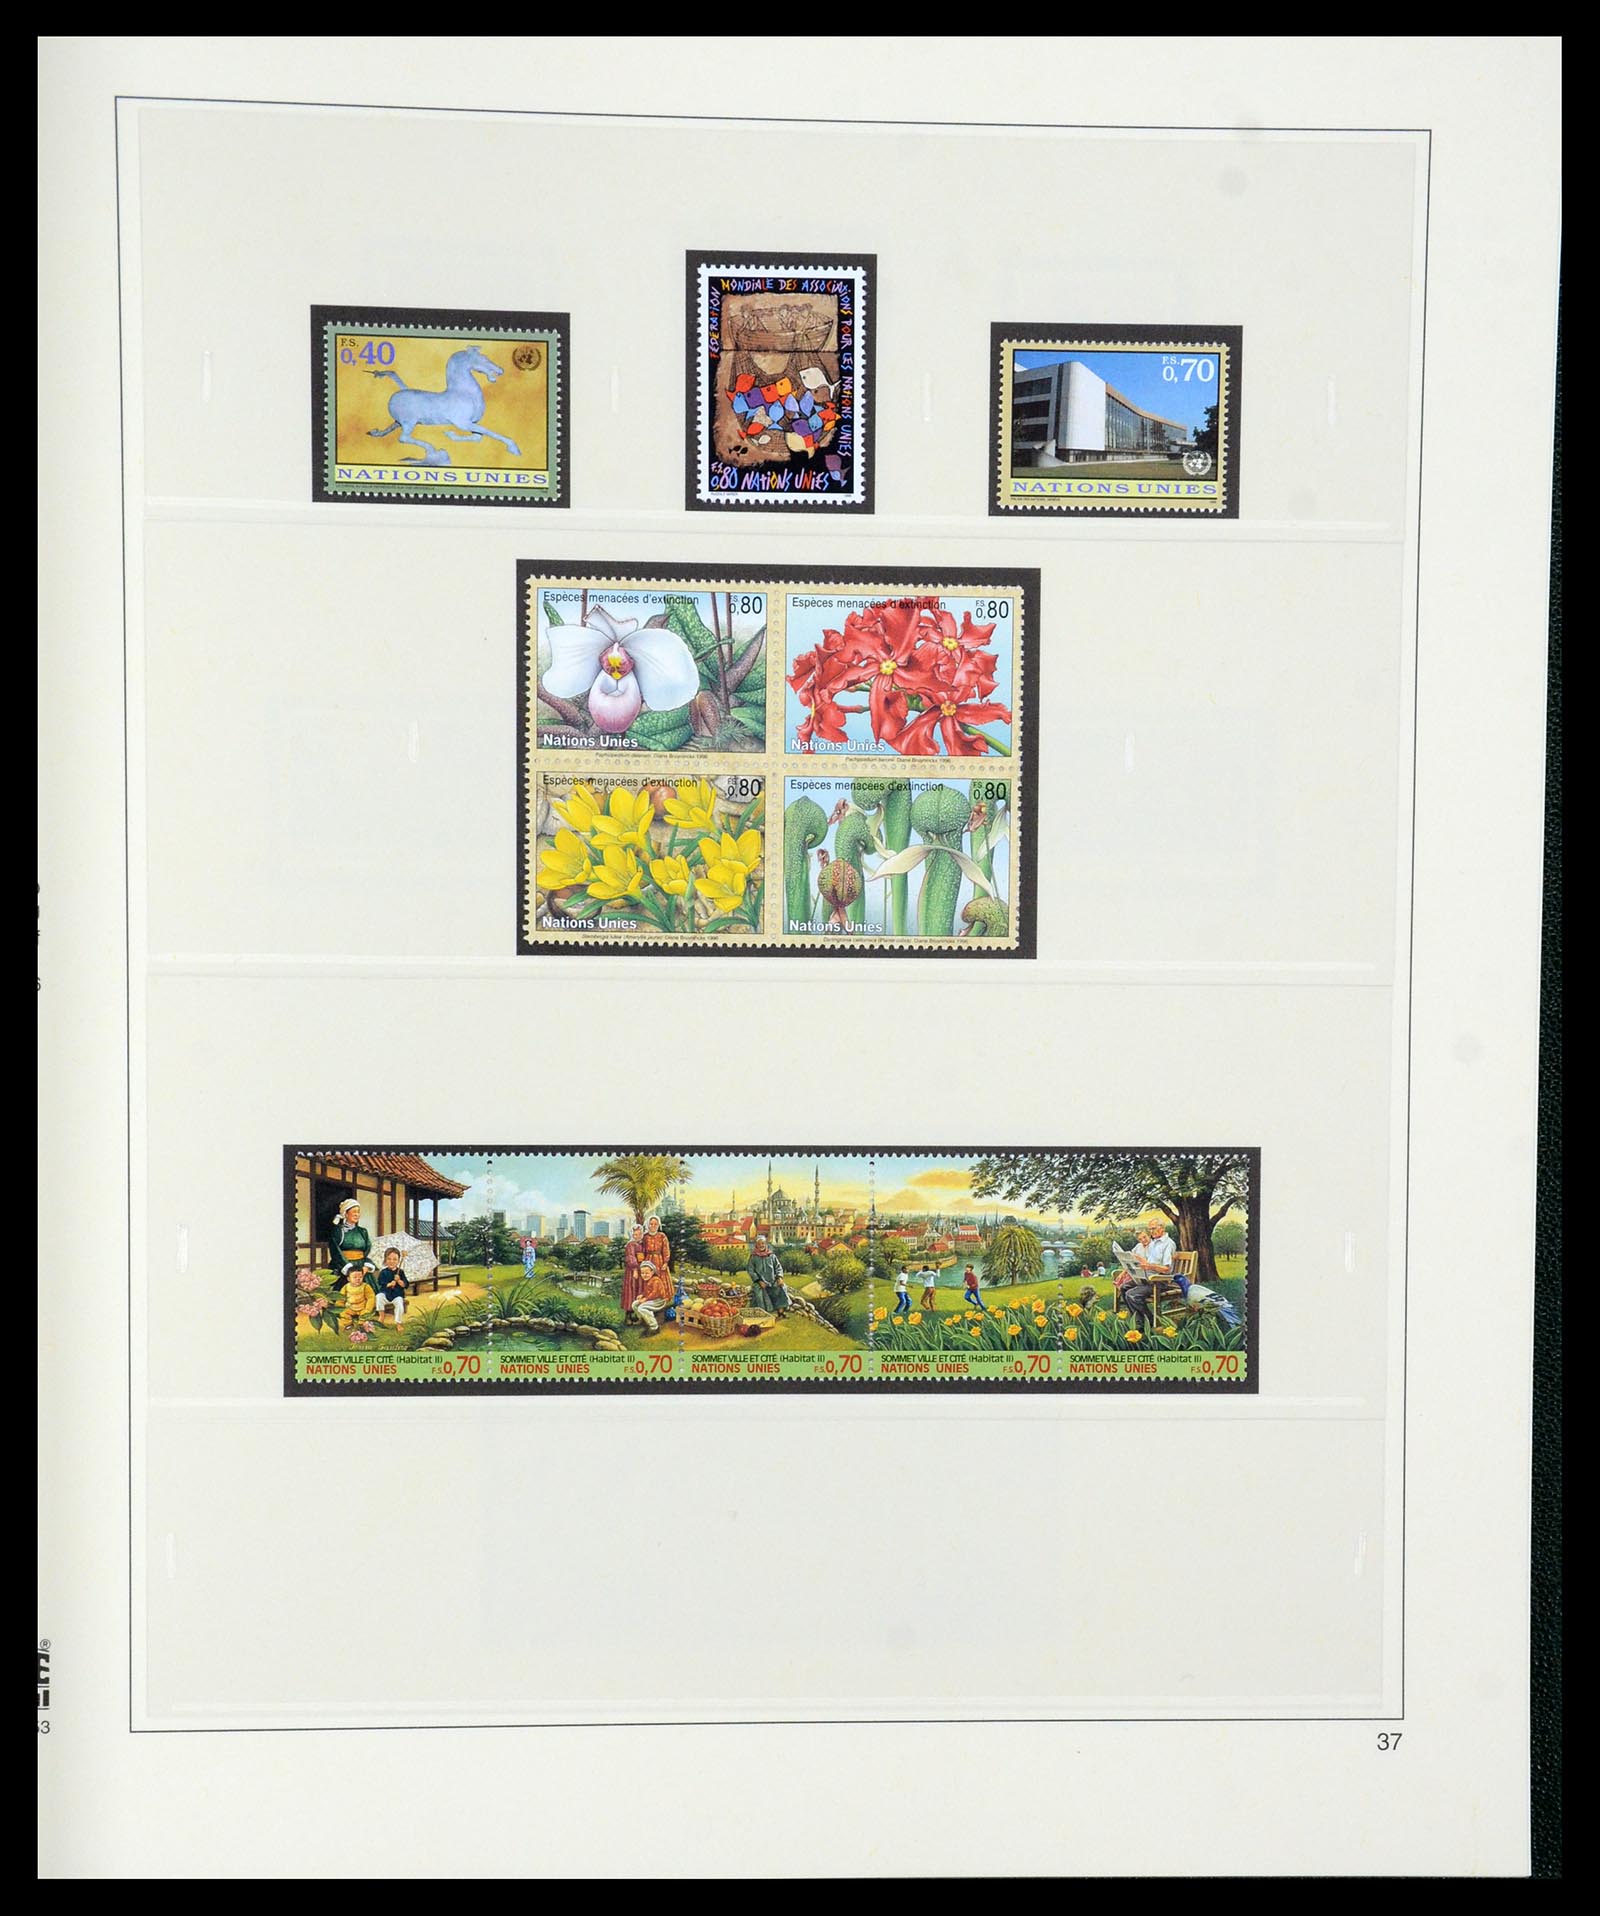 35221 037 - Postzegelverzameling 35221 Verenigde Naties Genève 1969-2010.